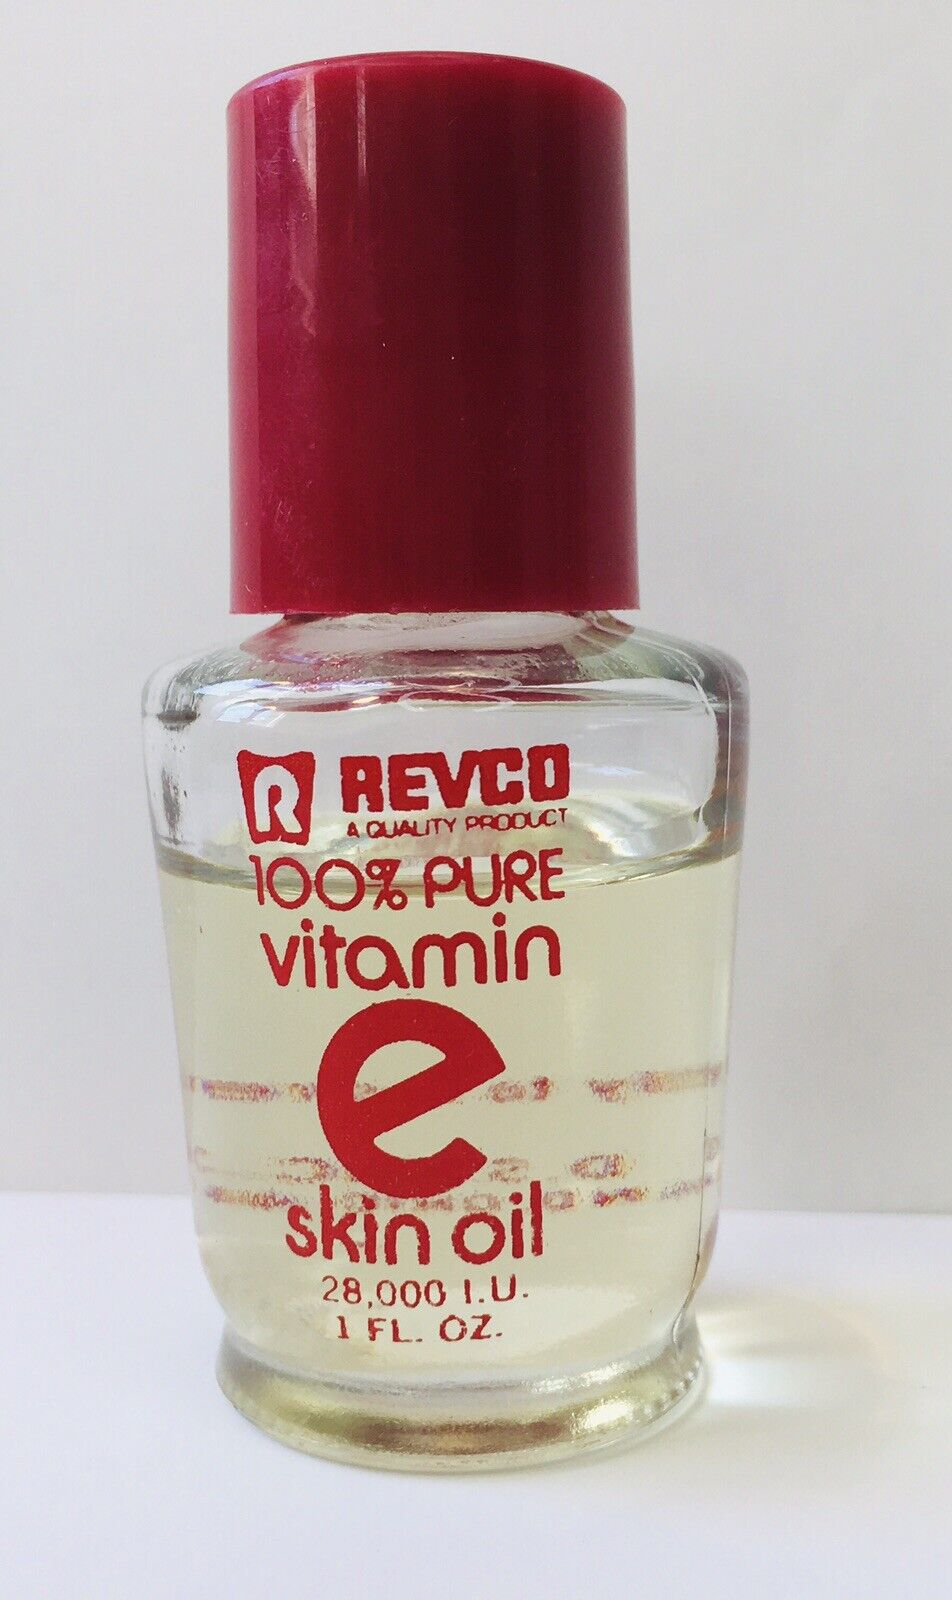 Vintage Revco 100% Pure Vitamin E Skin Oil 1 fl oz Collectible / Prop Value